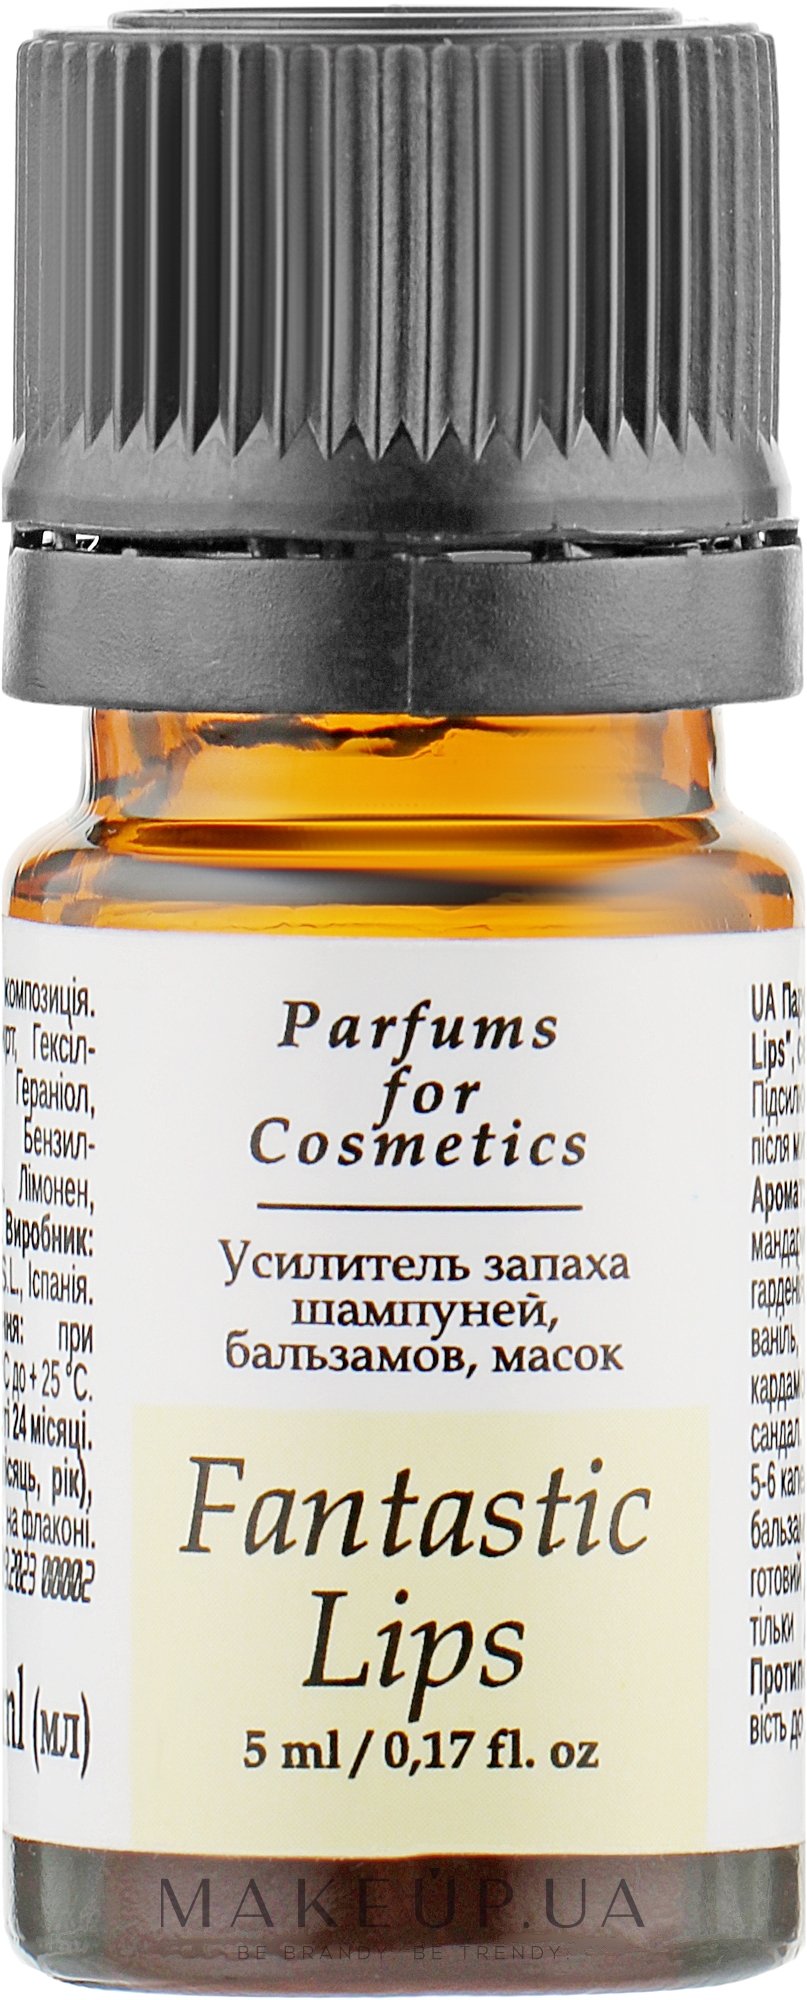 Усилитель запаха шампуней, бальзамов, масок "Fantastic Lips" - Parfums For Cosmetics Fantastic Lips — фото 5ml